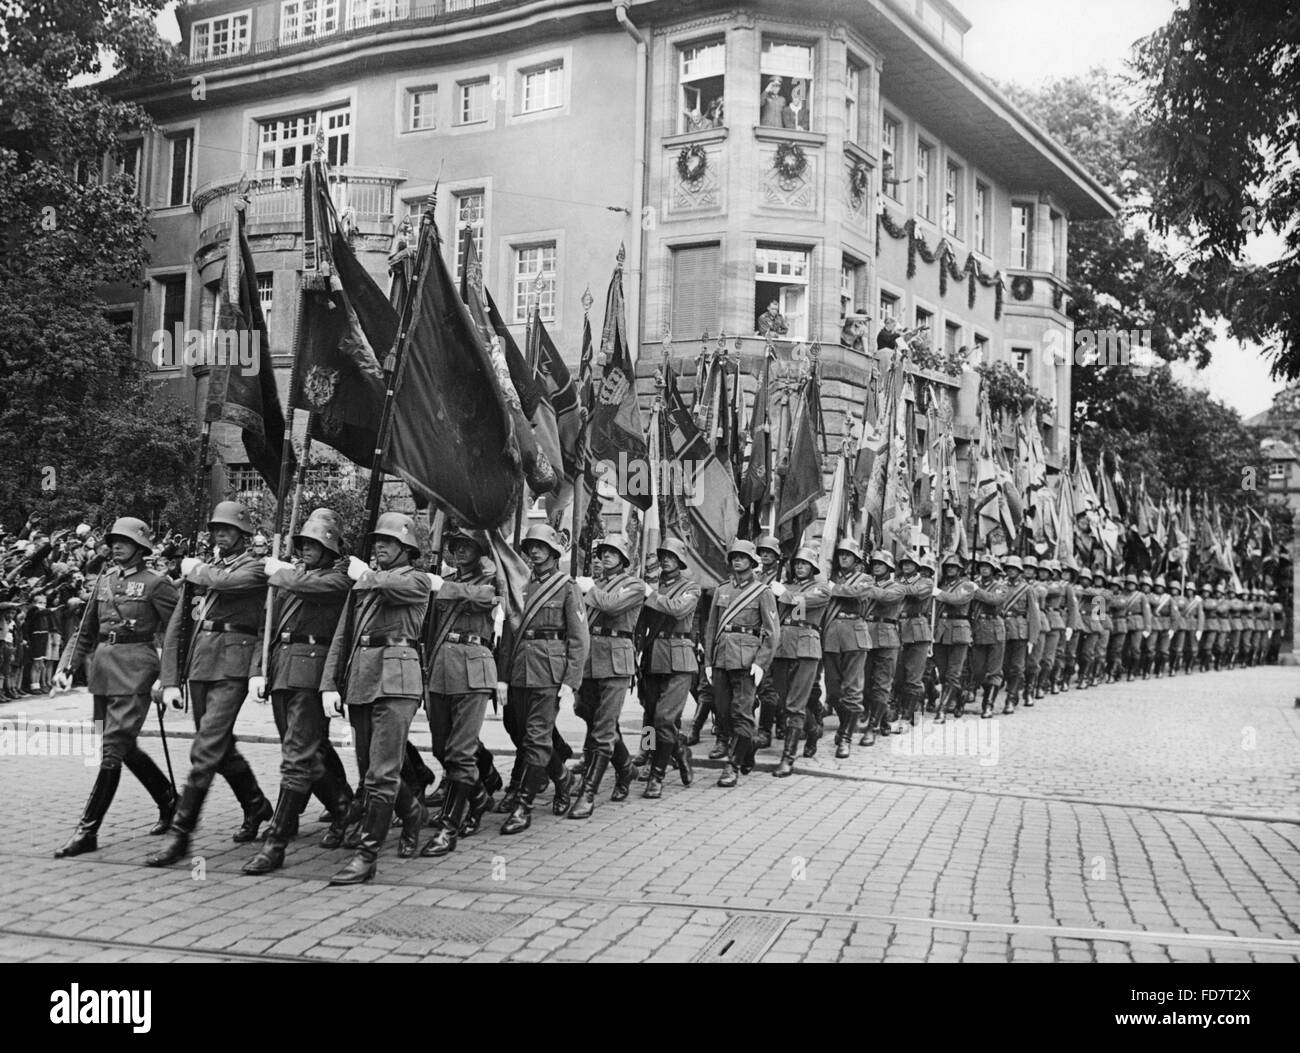 Parade du drapeau de la Wehrmacht au congrès de Nuremberg, 1936 Banque D'Images